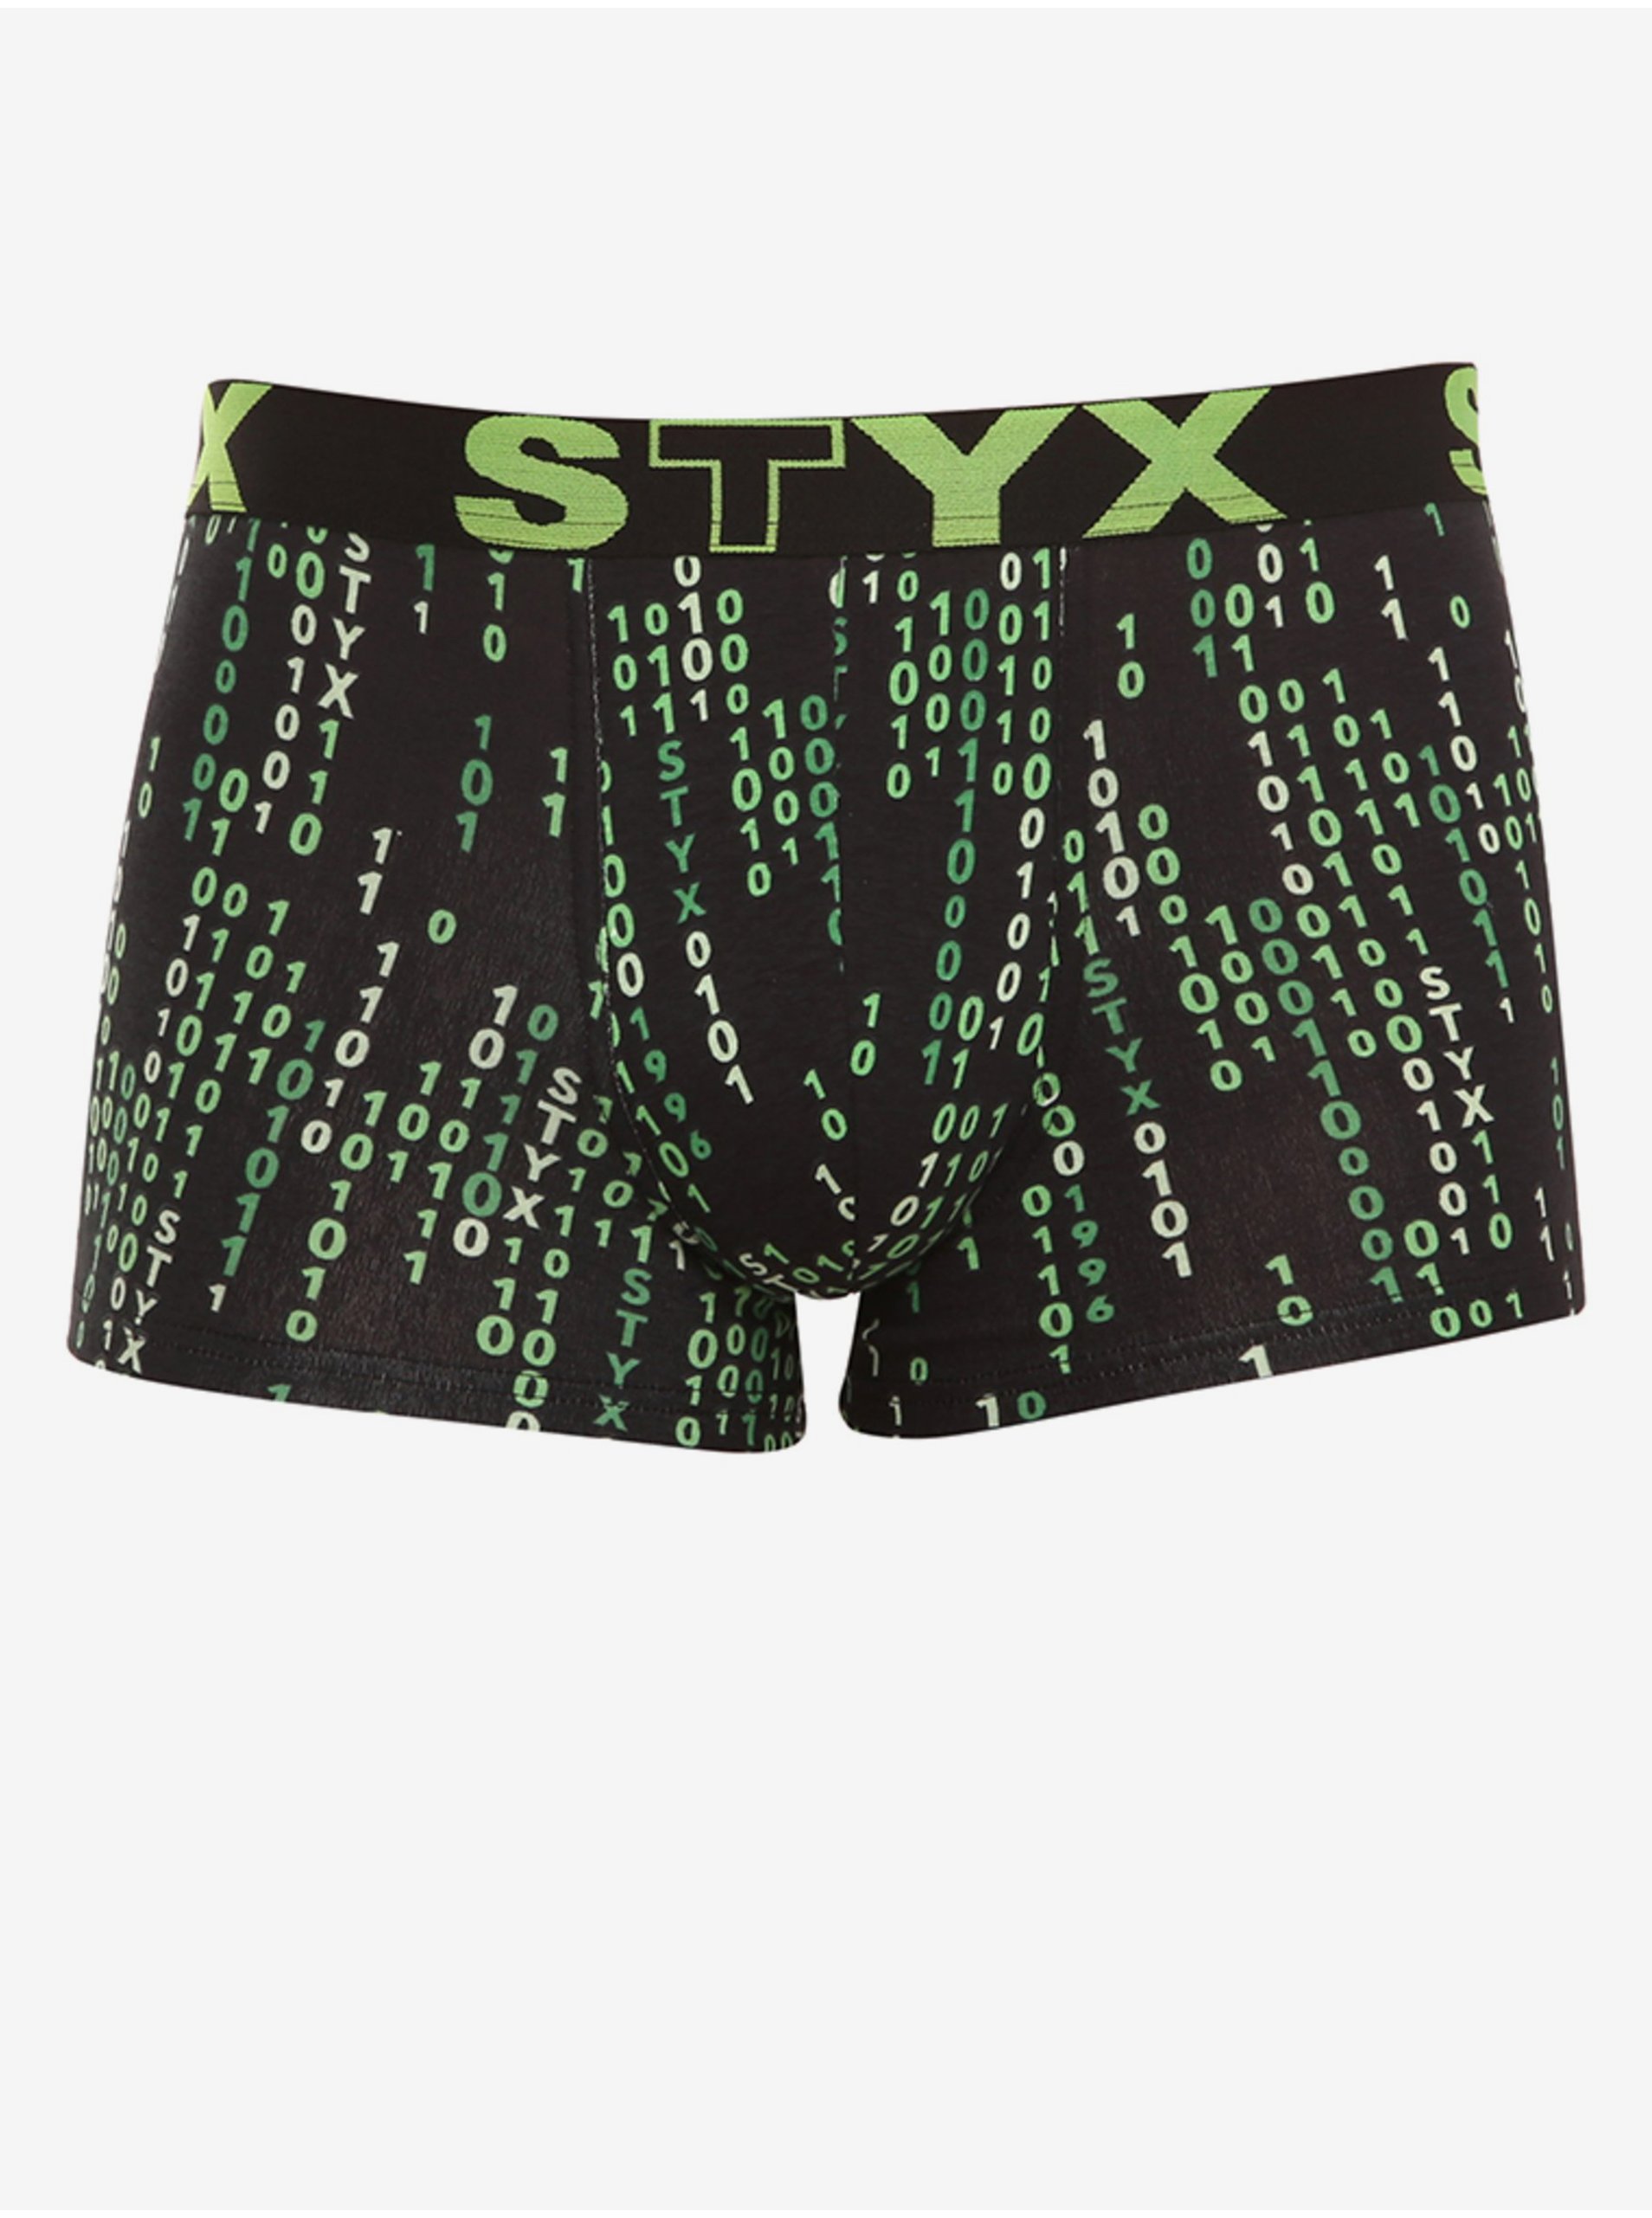 Lacno Boxerky pre mužov STYX - čierna, zelená